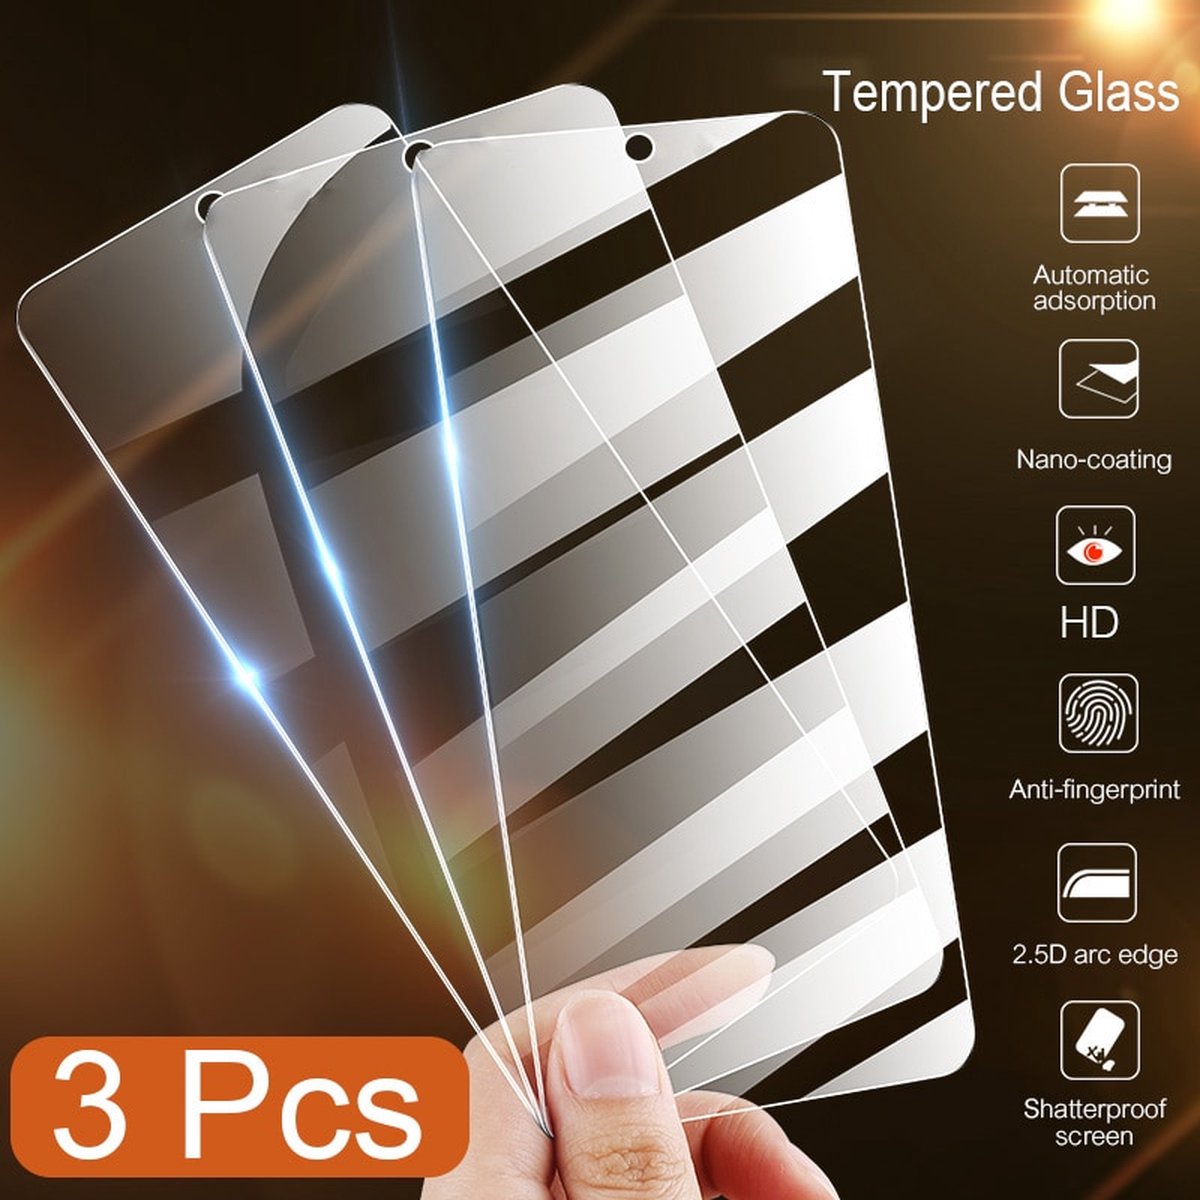 ✅ NEW 3 STUKS in nette verpakking Telefonie screenprotector Glas voor Samsung A13. ✅ ZEER HOOGWAARDIGE KWALITEIT ✅ PROLEDPARTNERS ®